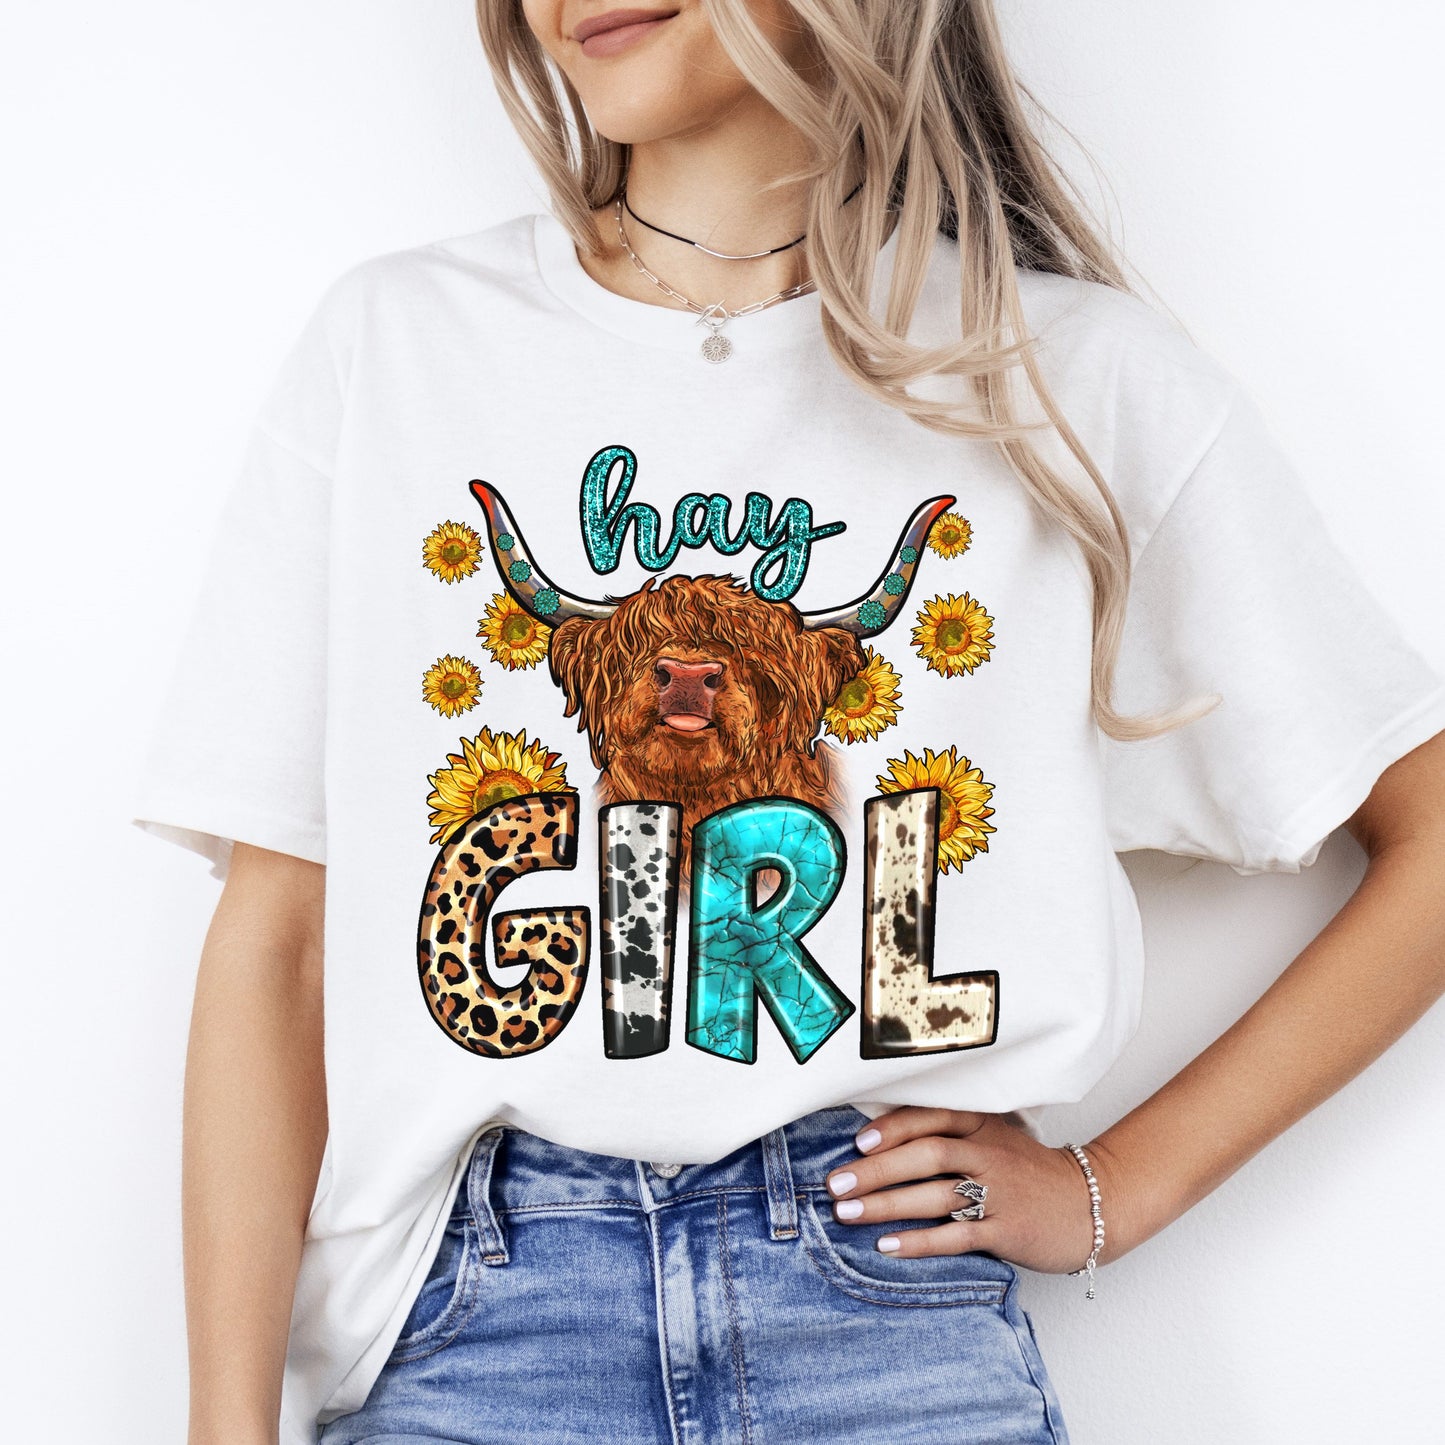 Hay girl T-Shirt gift Western Sunflower highland cow Texas girl Unisex tee Sand White Sport Grey-White-Family-Gift-Planet